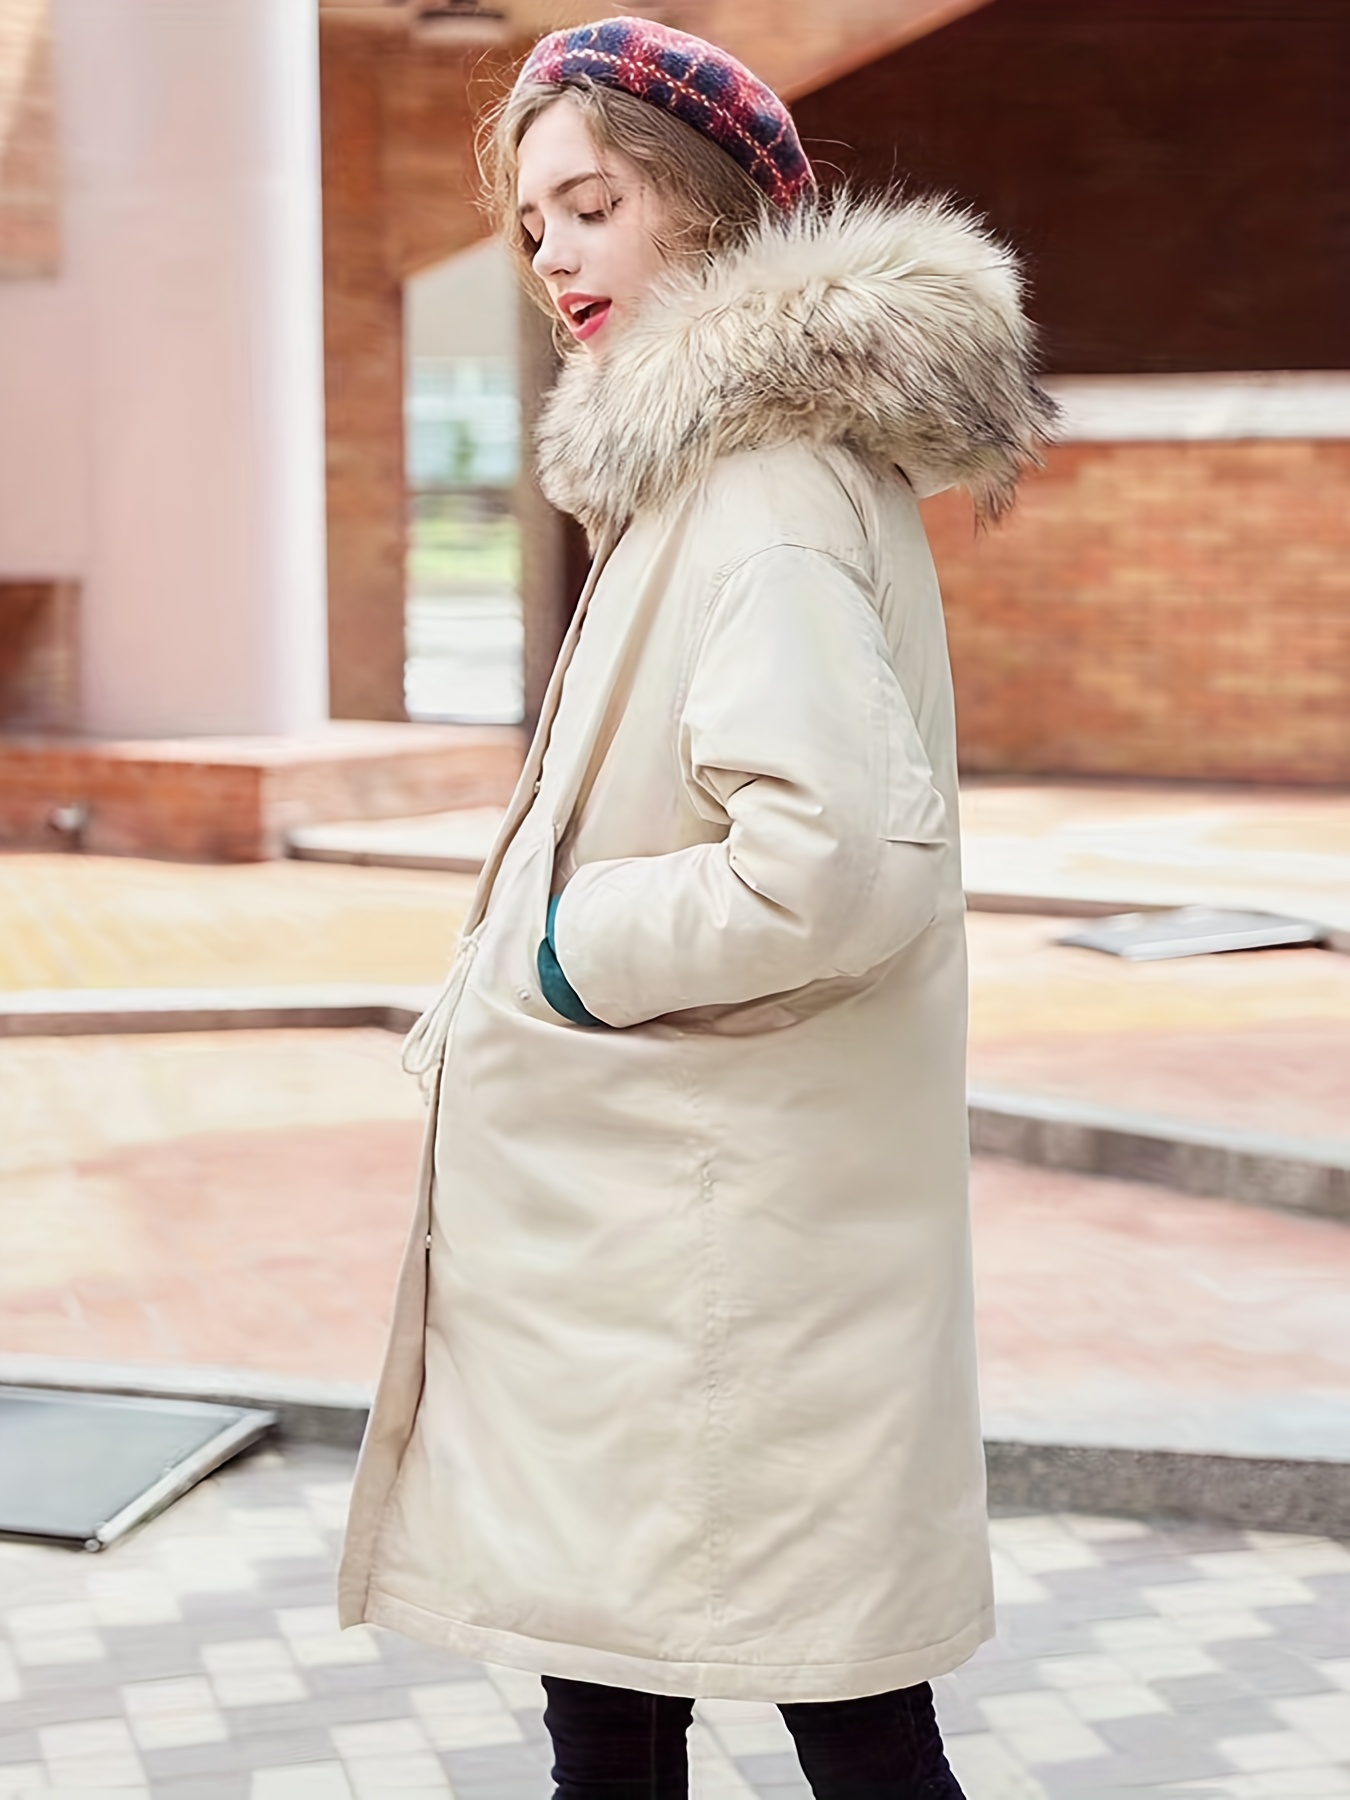 Manteau hiver pour garçon avec capuche fourrure et cordon ceinture